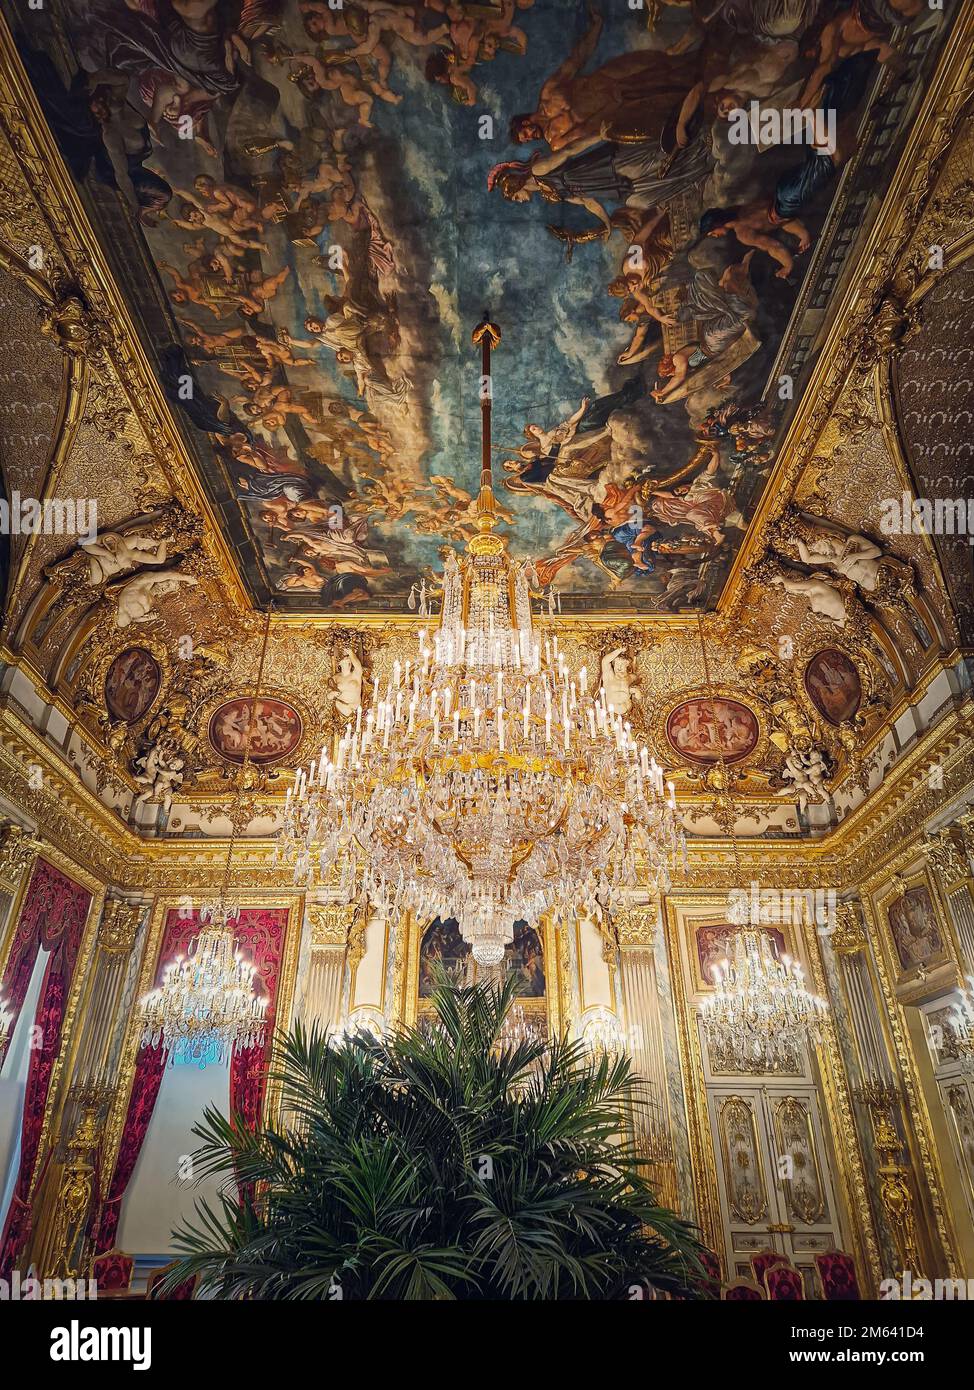 Splendidi appartamenti Napoleon al Louvre. Camere familiari reali con tende cardinal rosse, pareti dorate, dipinti e cristallo ch Foto Stock